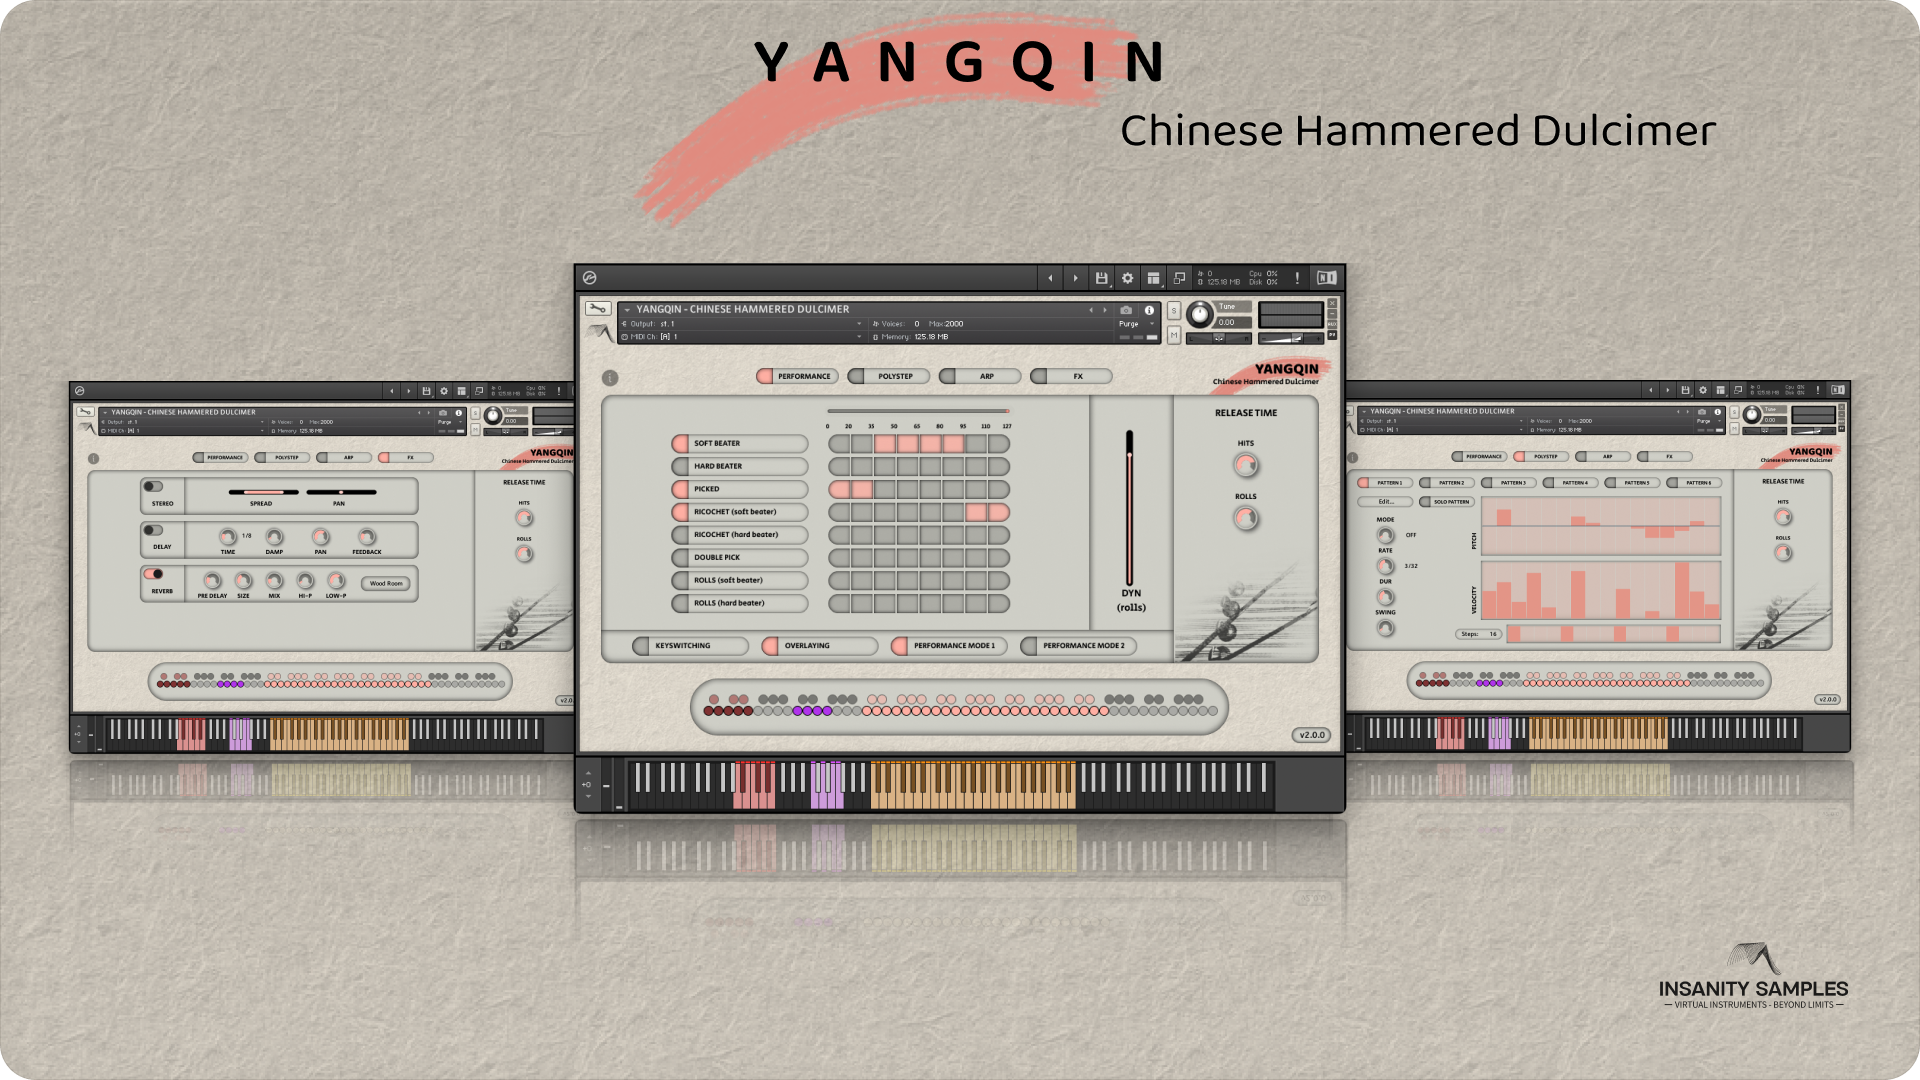 YANGQIN - Chinese Hammered Dulcimer